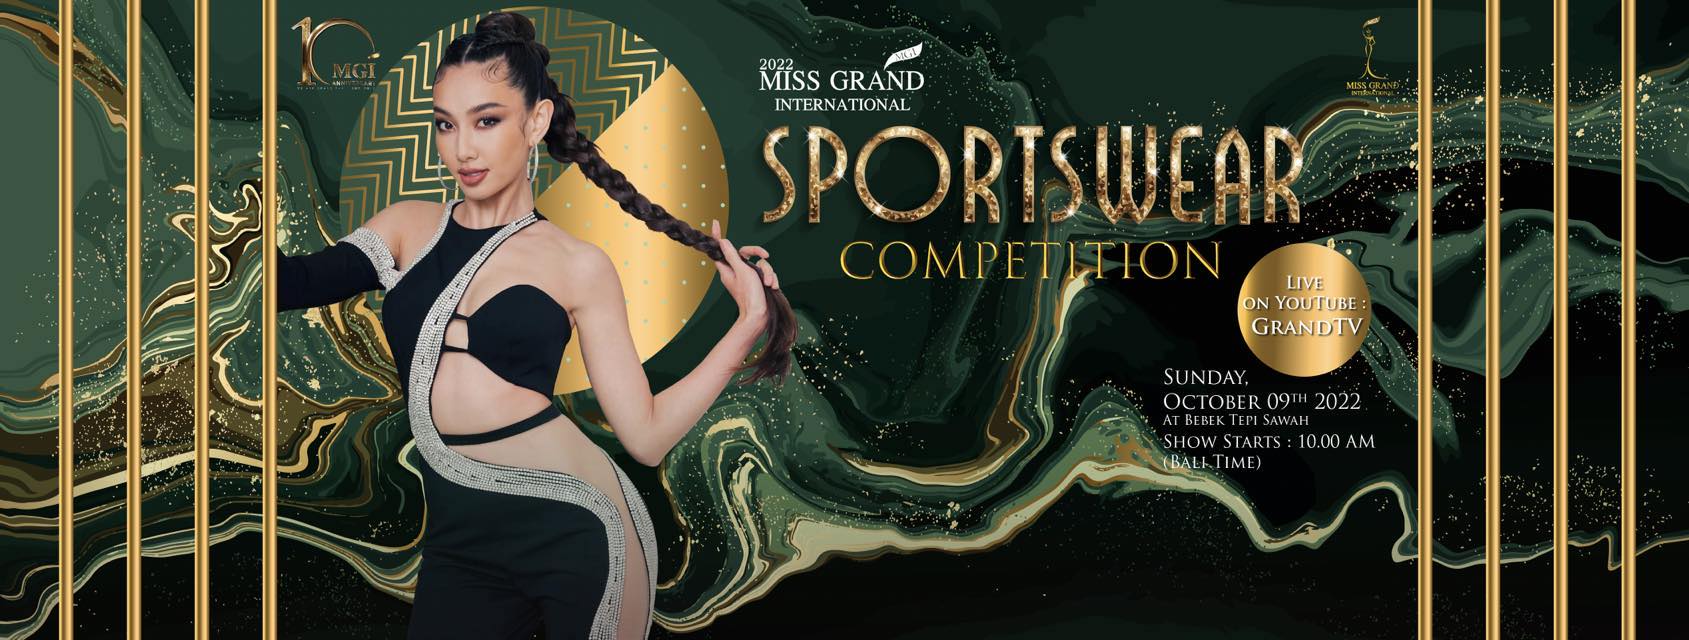 Phần thi Sportswear tại Miss Grand International 2022 được tổ chức sáng 09/10.